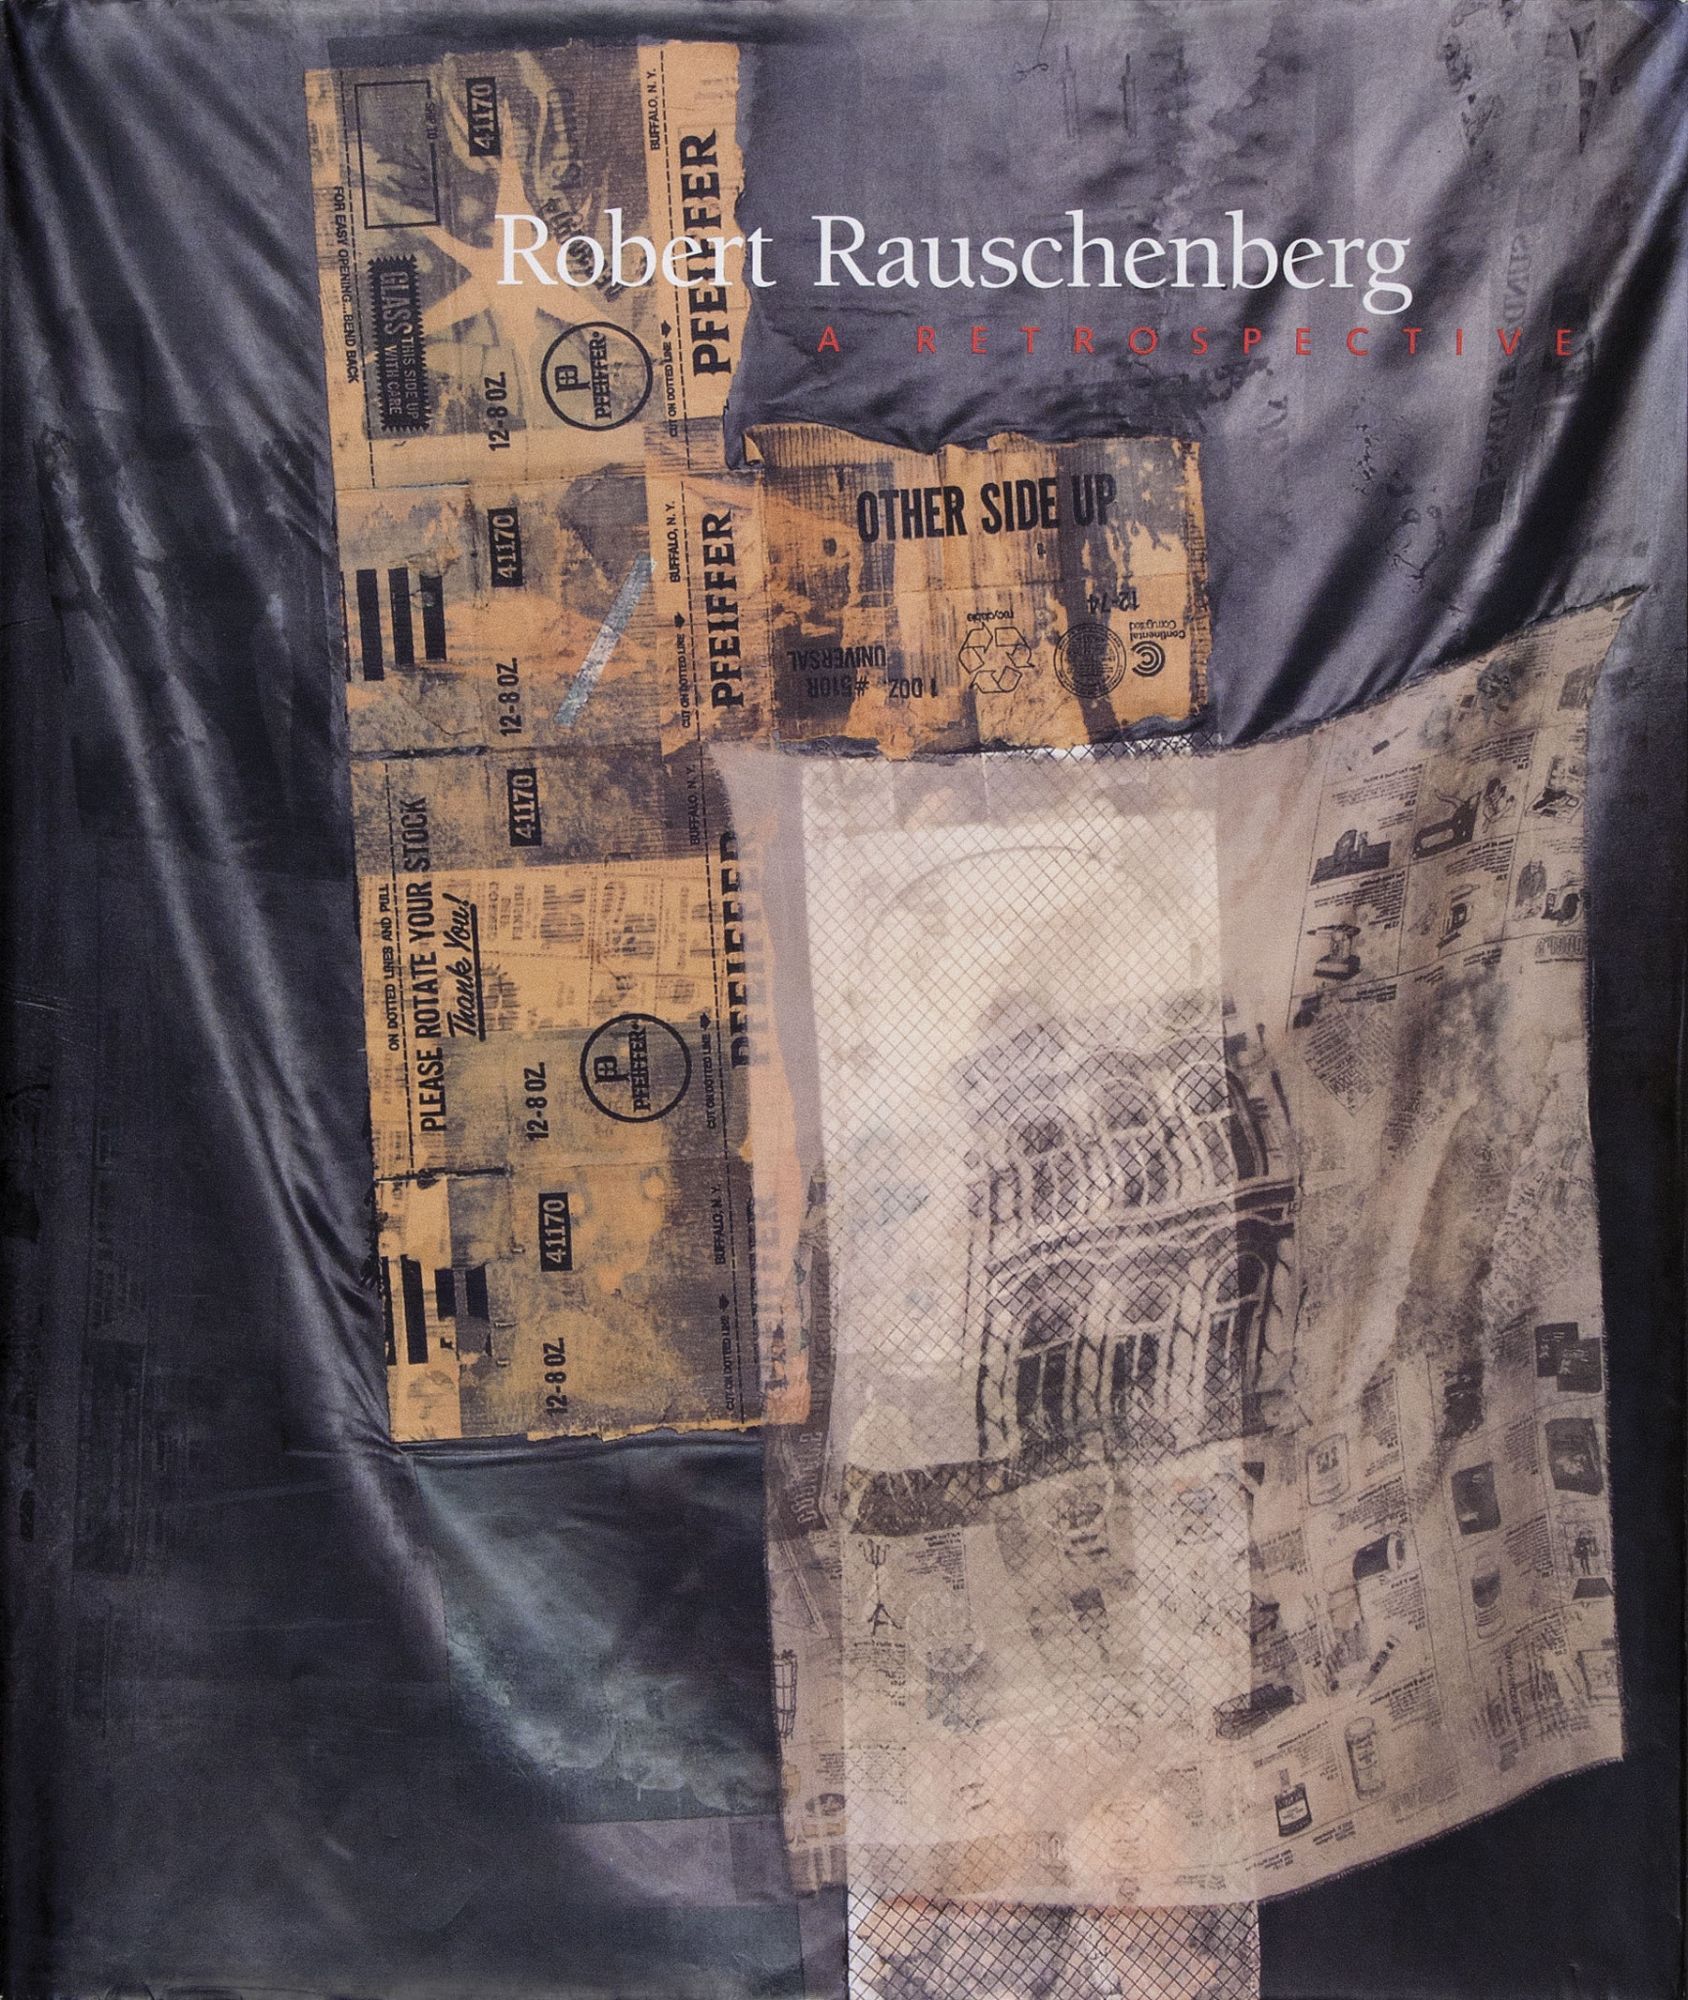 ROBERT RAUSCHENBERG: A Retrospective | Walter Hopps, New